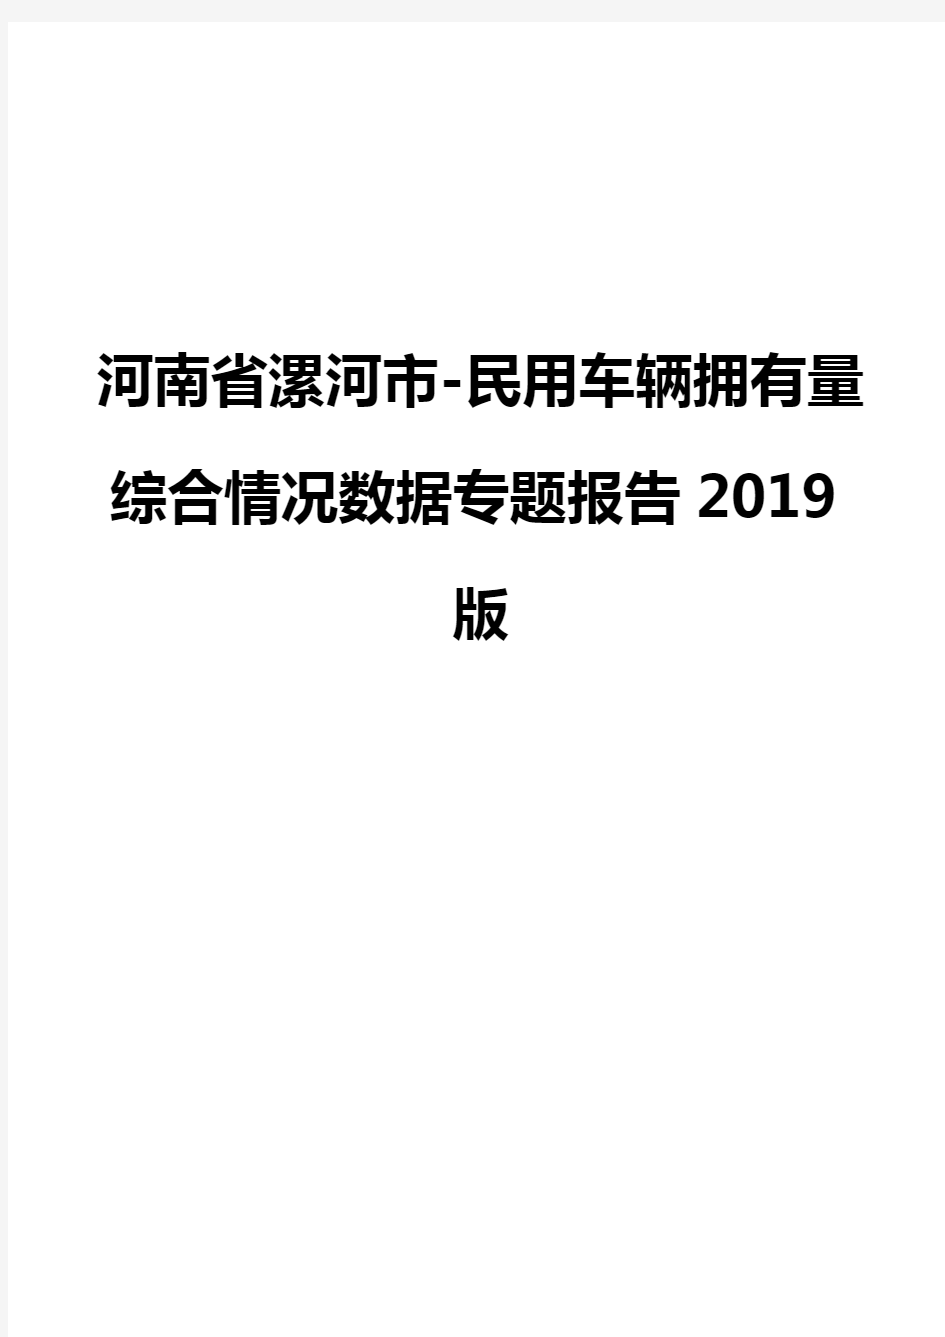 河南省漯河市-民用车辆拥有量综合情况数据专题报告2019版